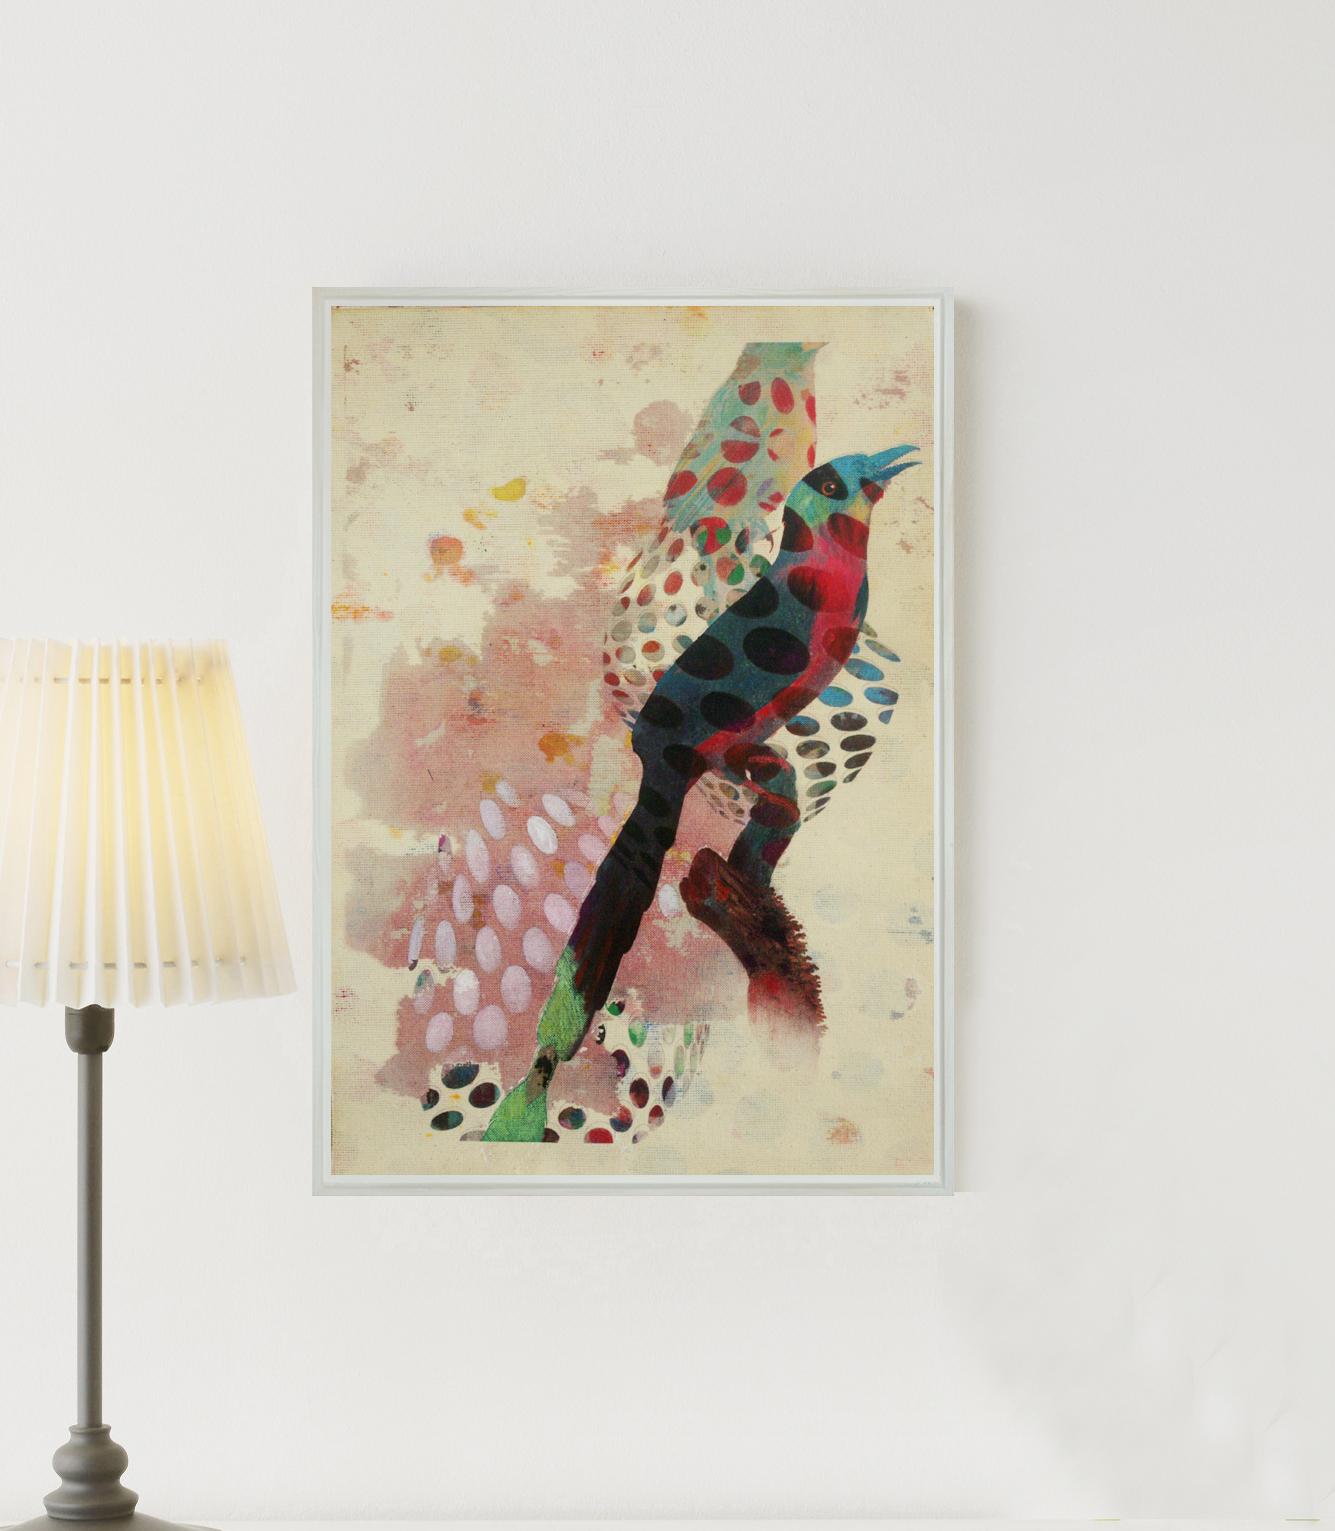 Vogele 018- Zeitgenössisch, abstrakt, expressionistisch, modern, Straßenkunst, surrealistisch – Painting von Francisco Nicolás